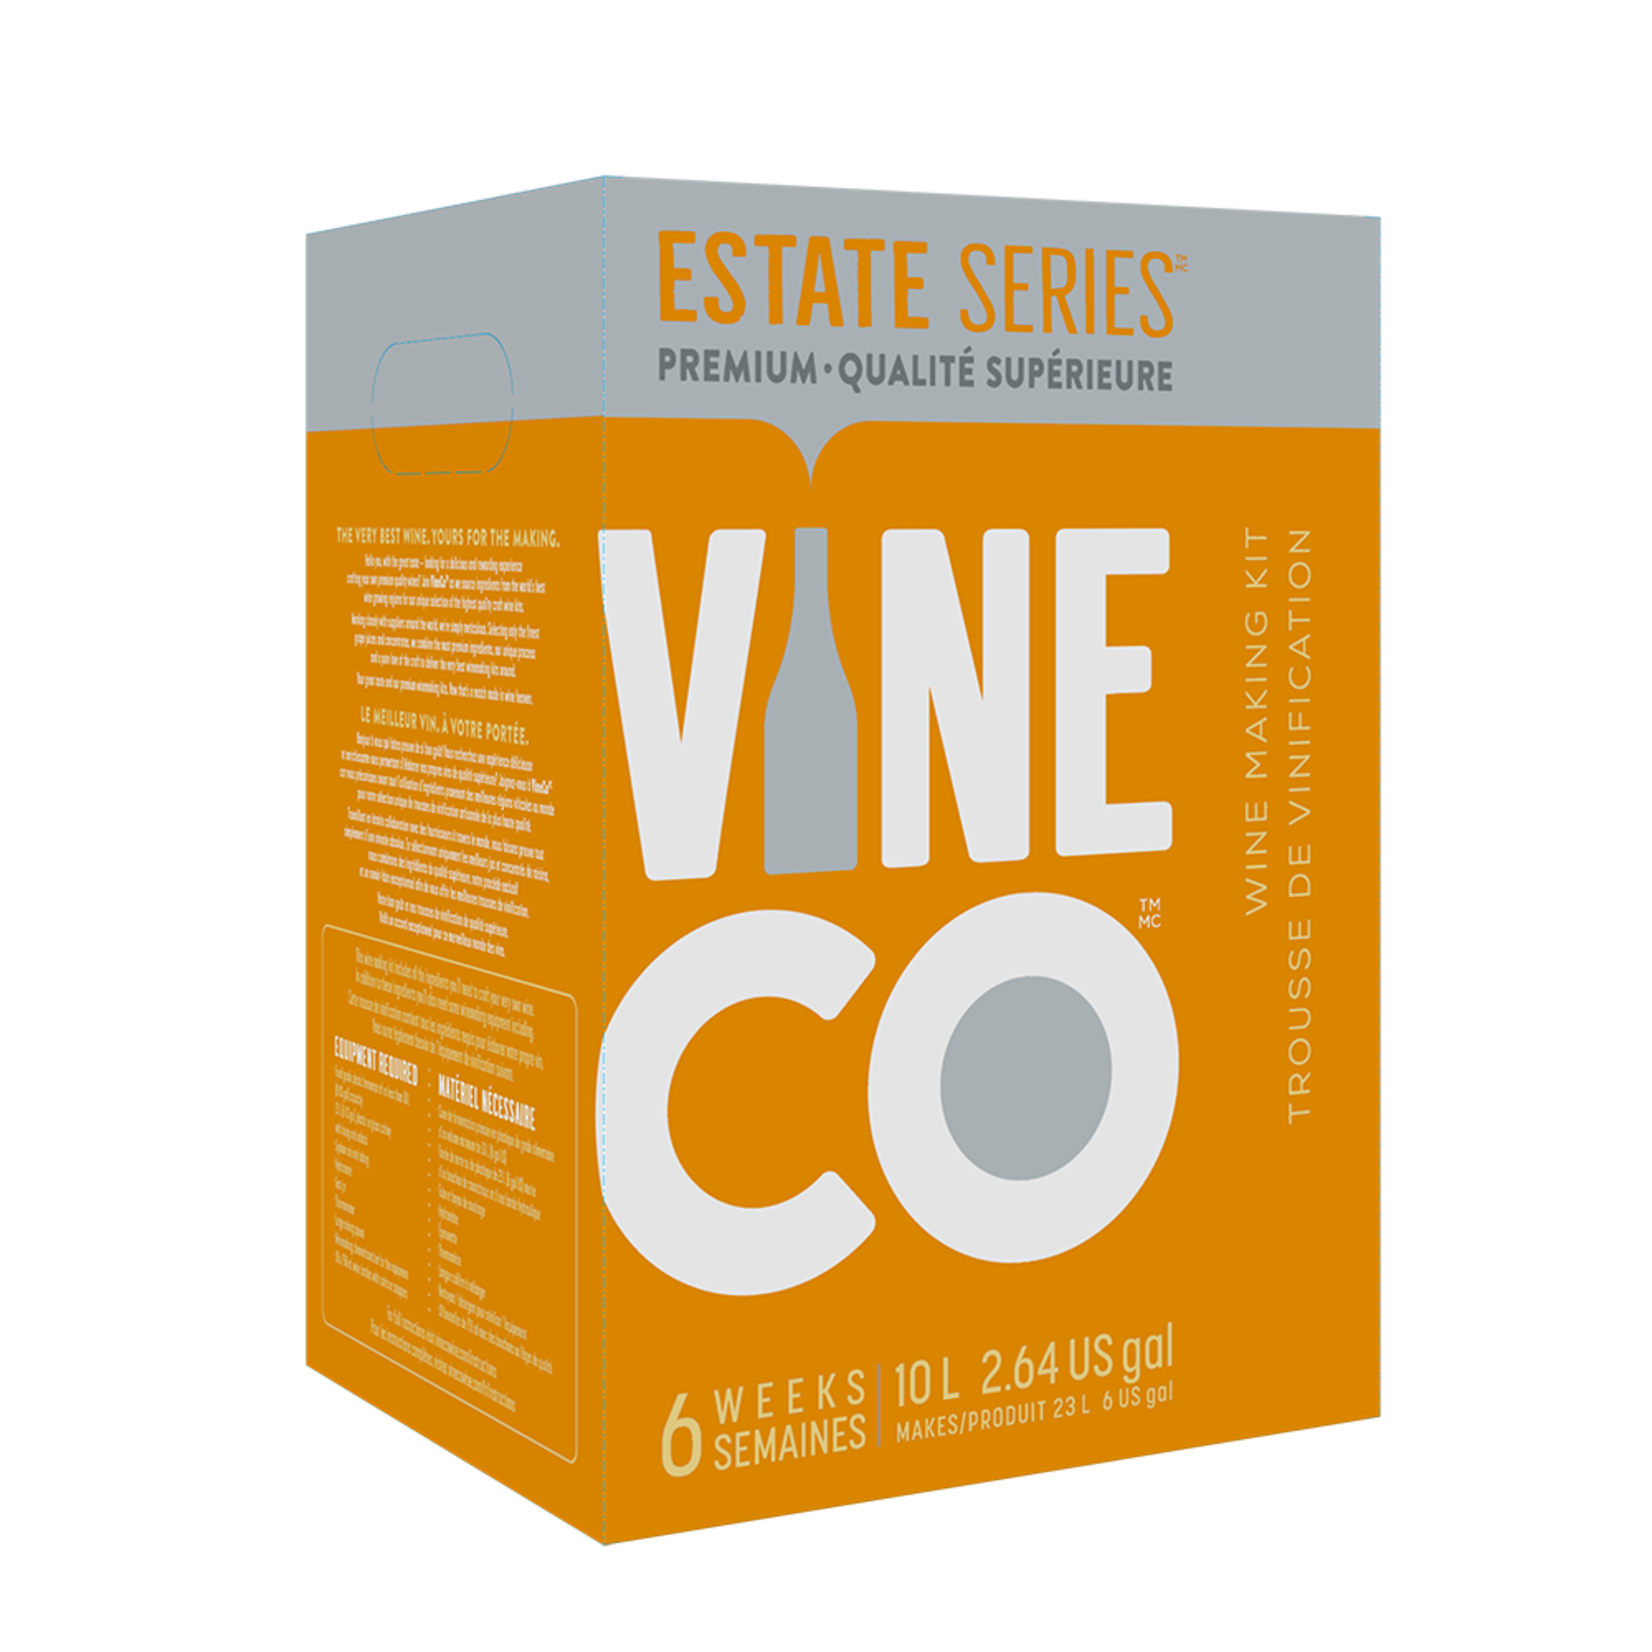 Vine Co. Estate Series Sauvignon Blanc, CAL